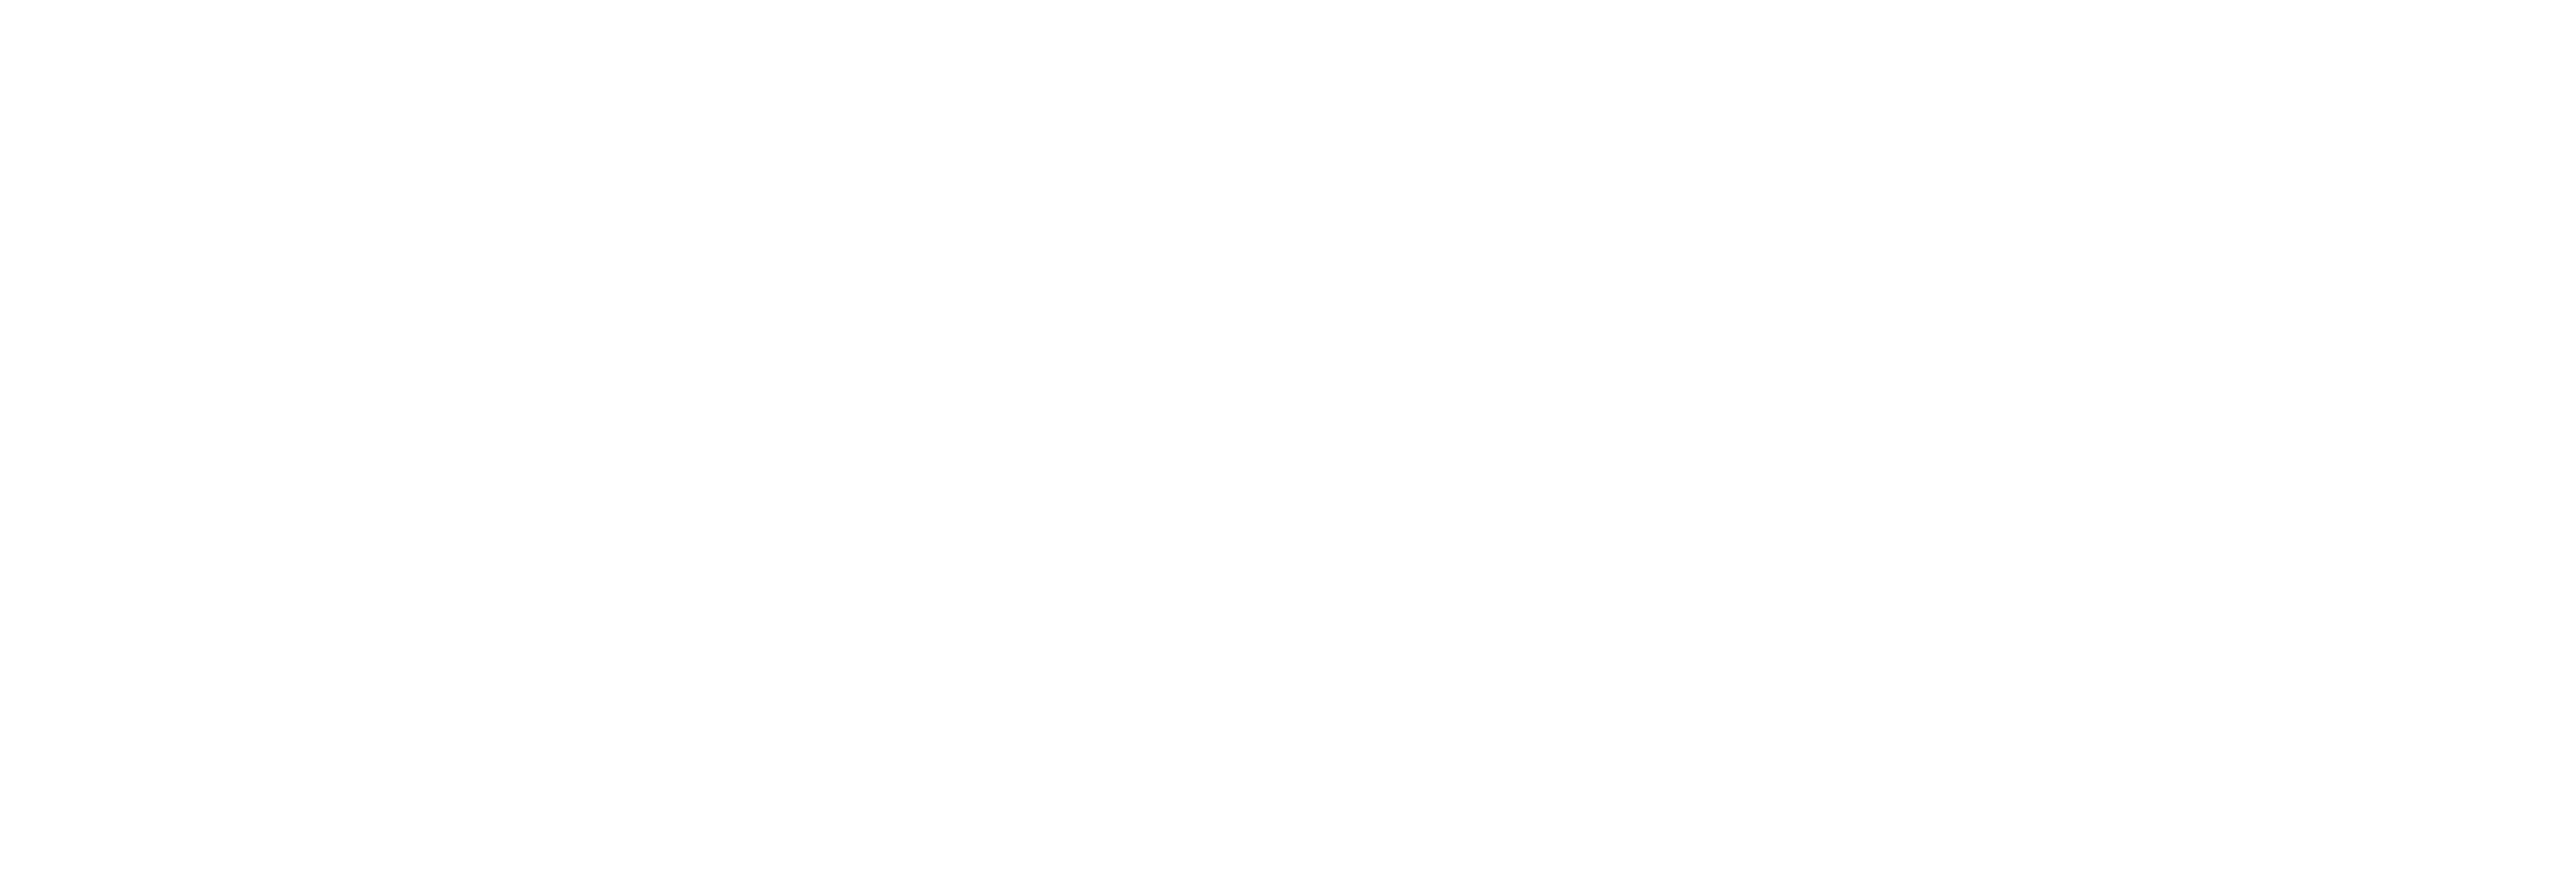 AniCura Centre Vétérinaire Carolovet à Charleroi logo